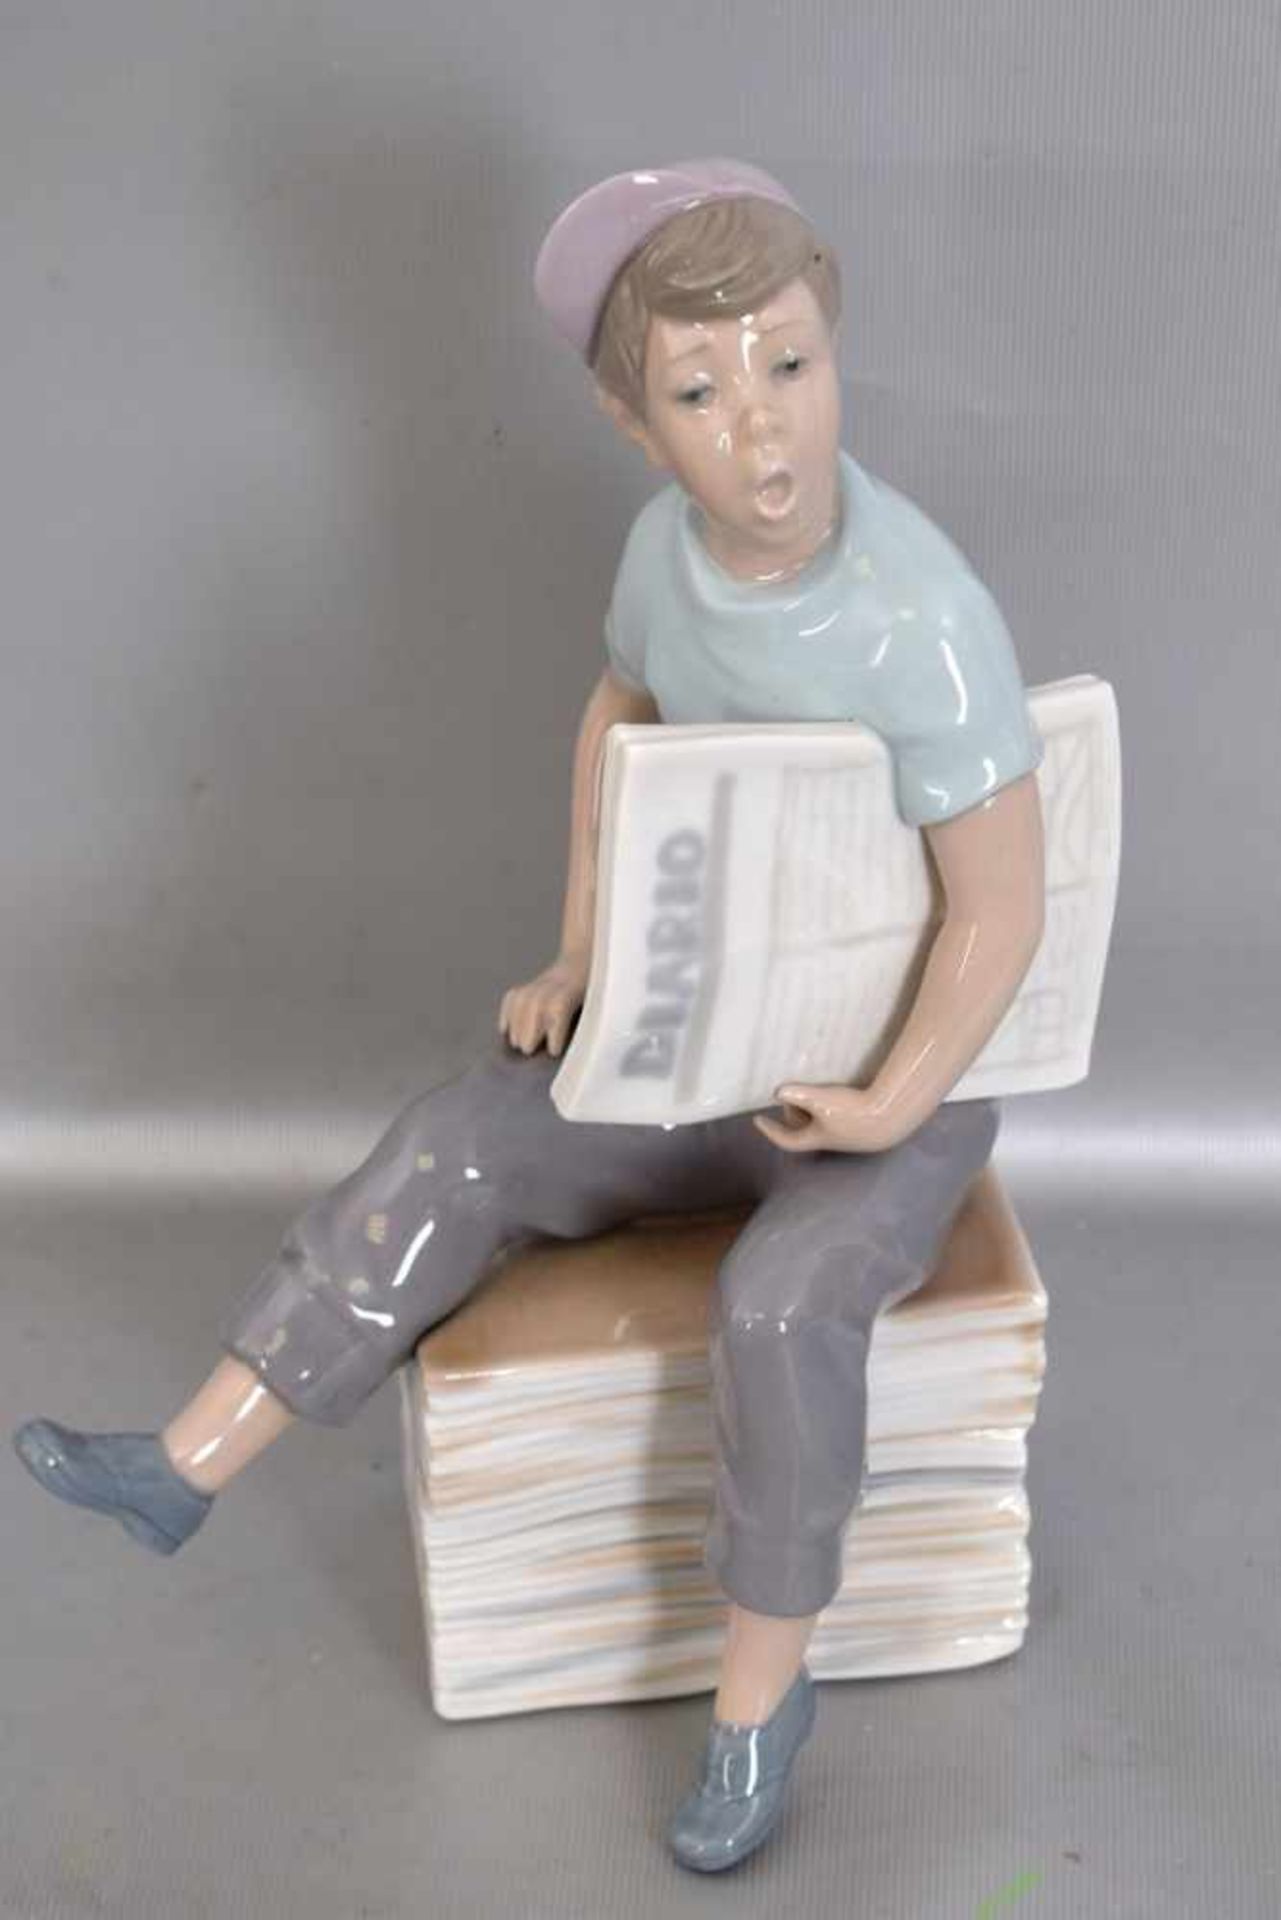 Der Zeitungsjunge auf Zeitungsstapel sitzend, Knabe mit Mütze und Zeitung, bunt bemalt, H 23 cm, FM